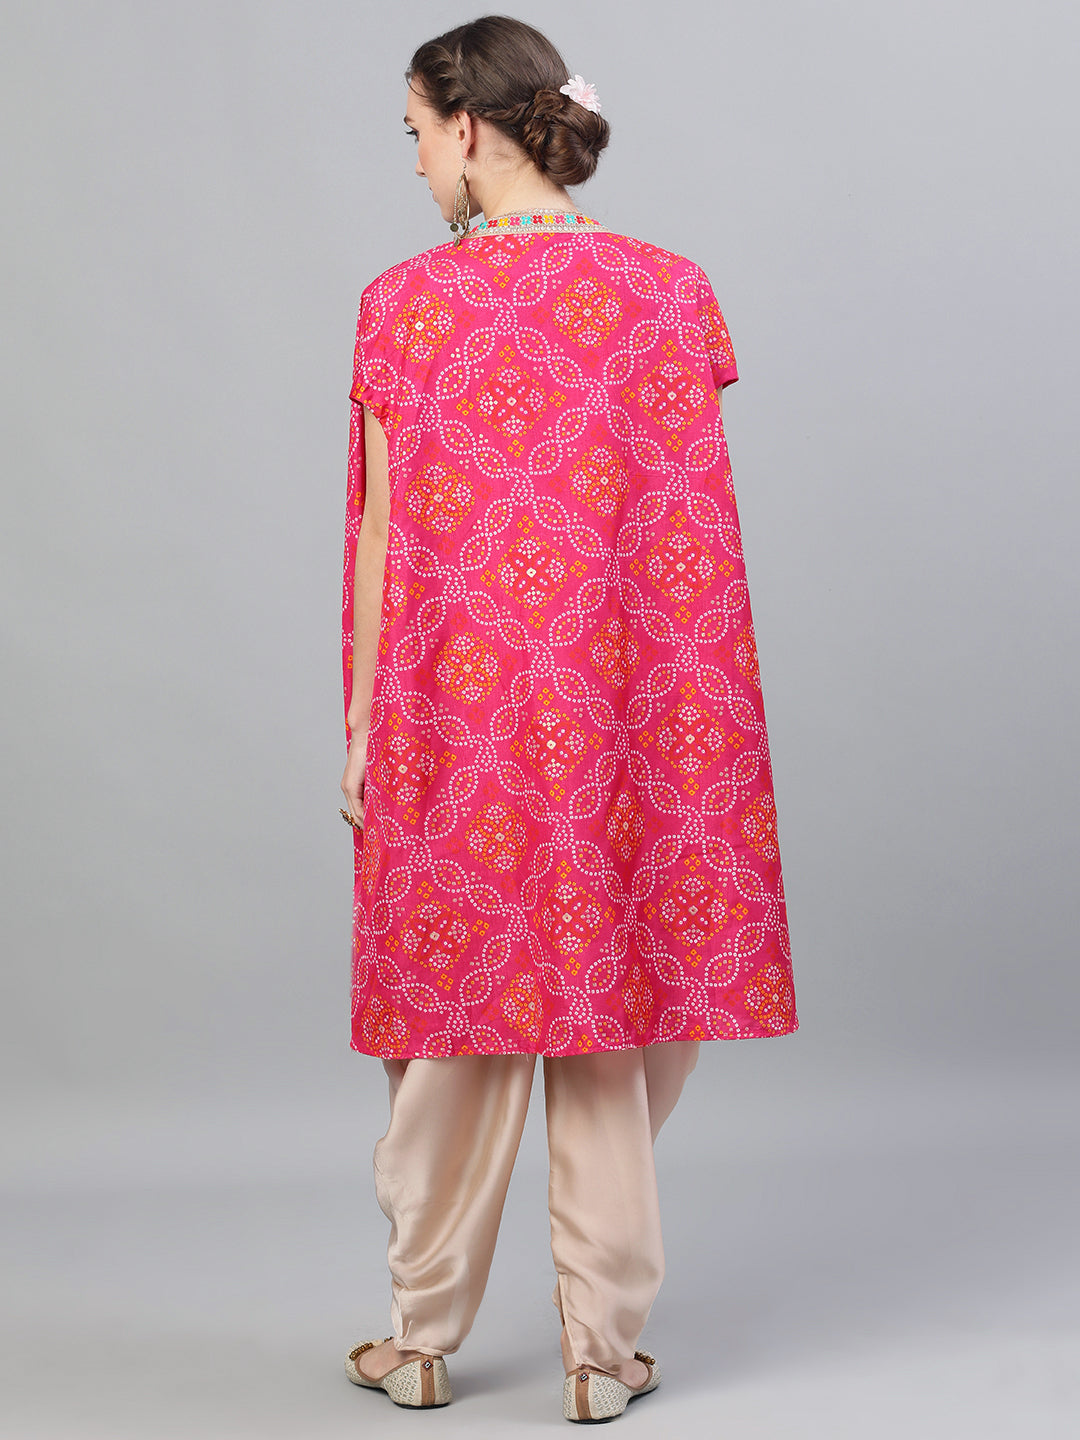 Women's Pink Bandhani Print Co Ord Set with Jacket - Aks